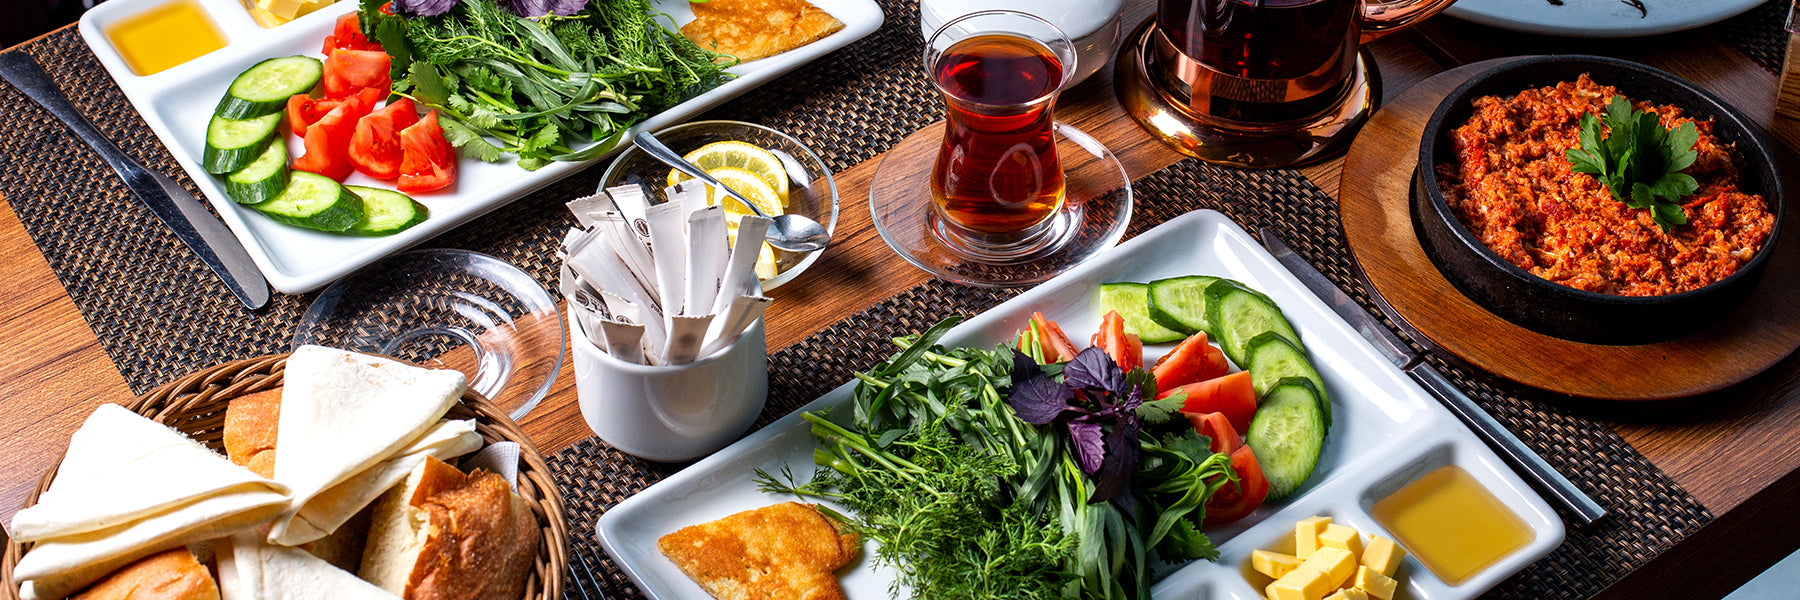 türkisches-frühstück